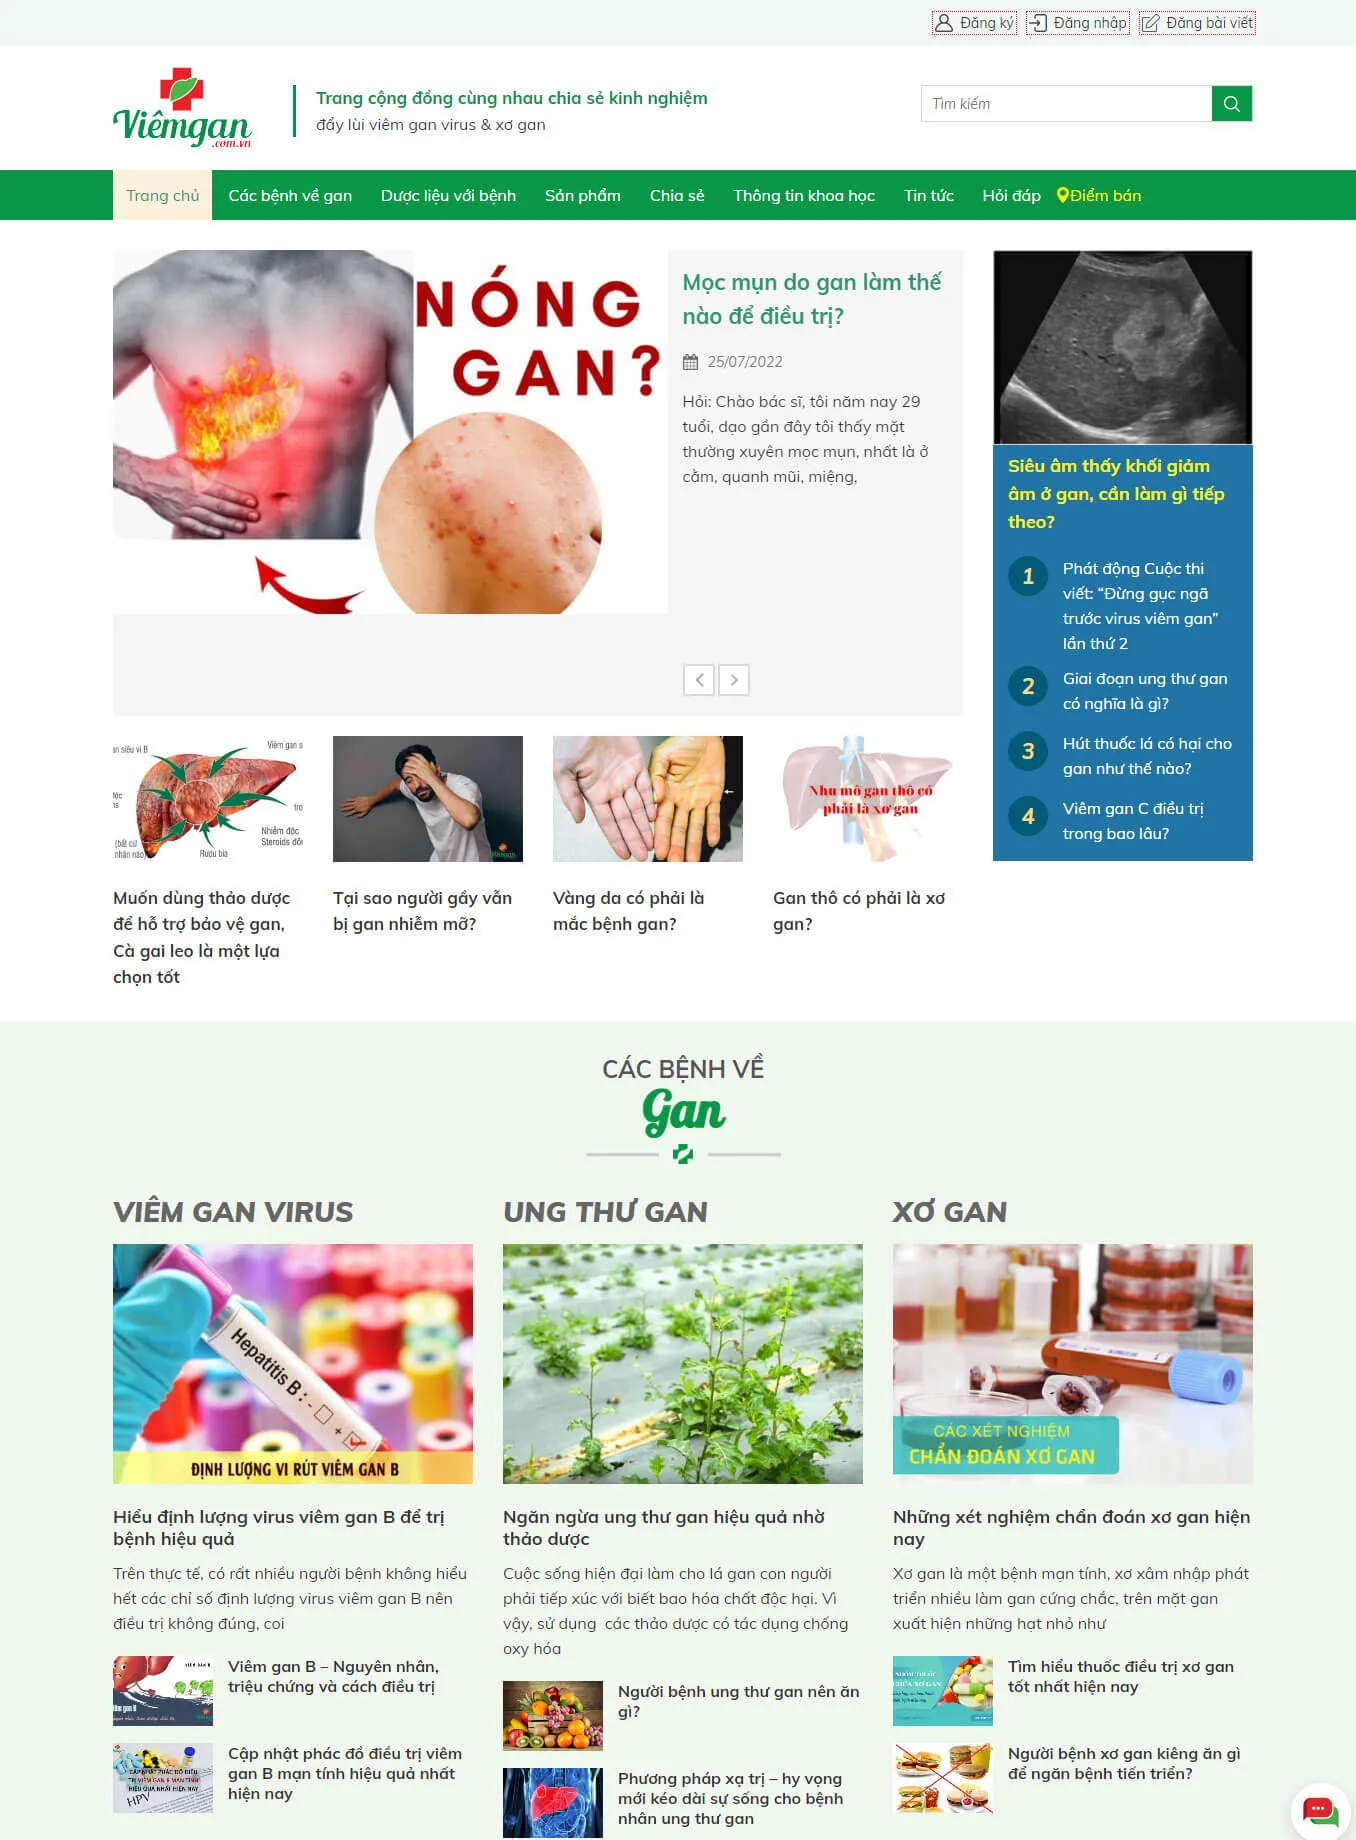 Website cho bệnh gan viemgan.com.vn